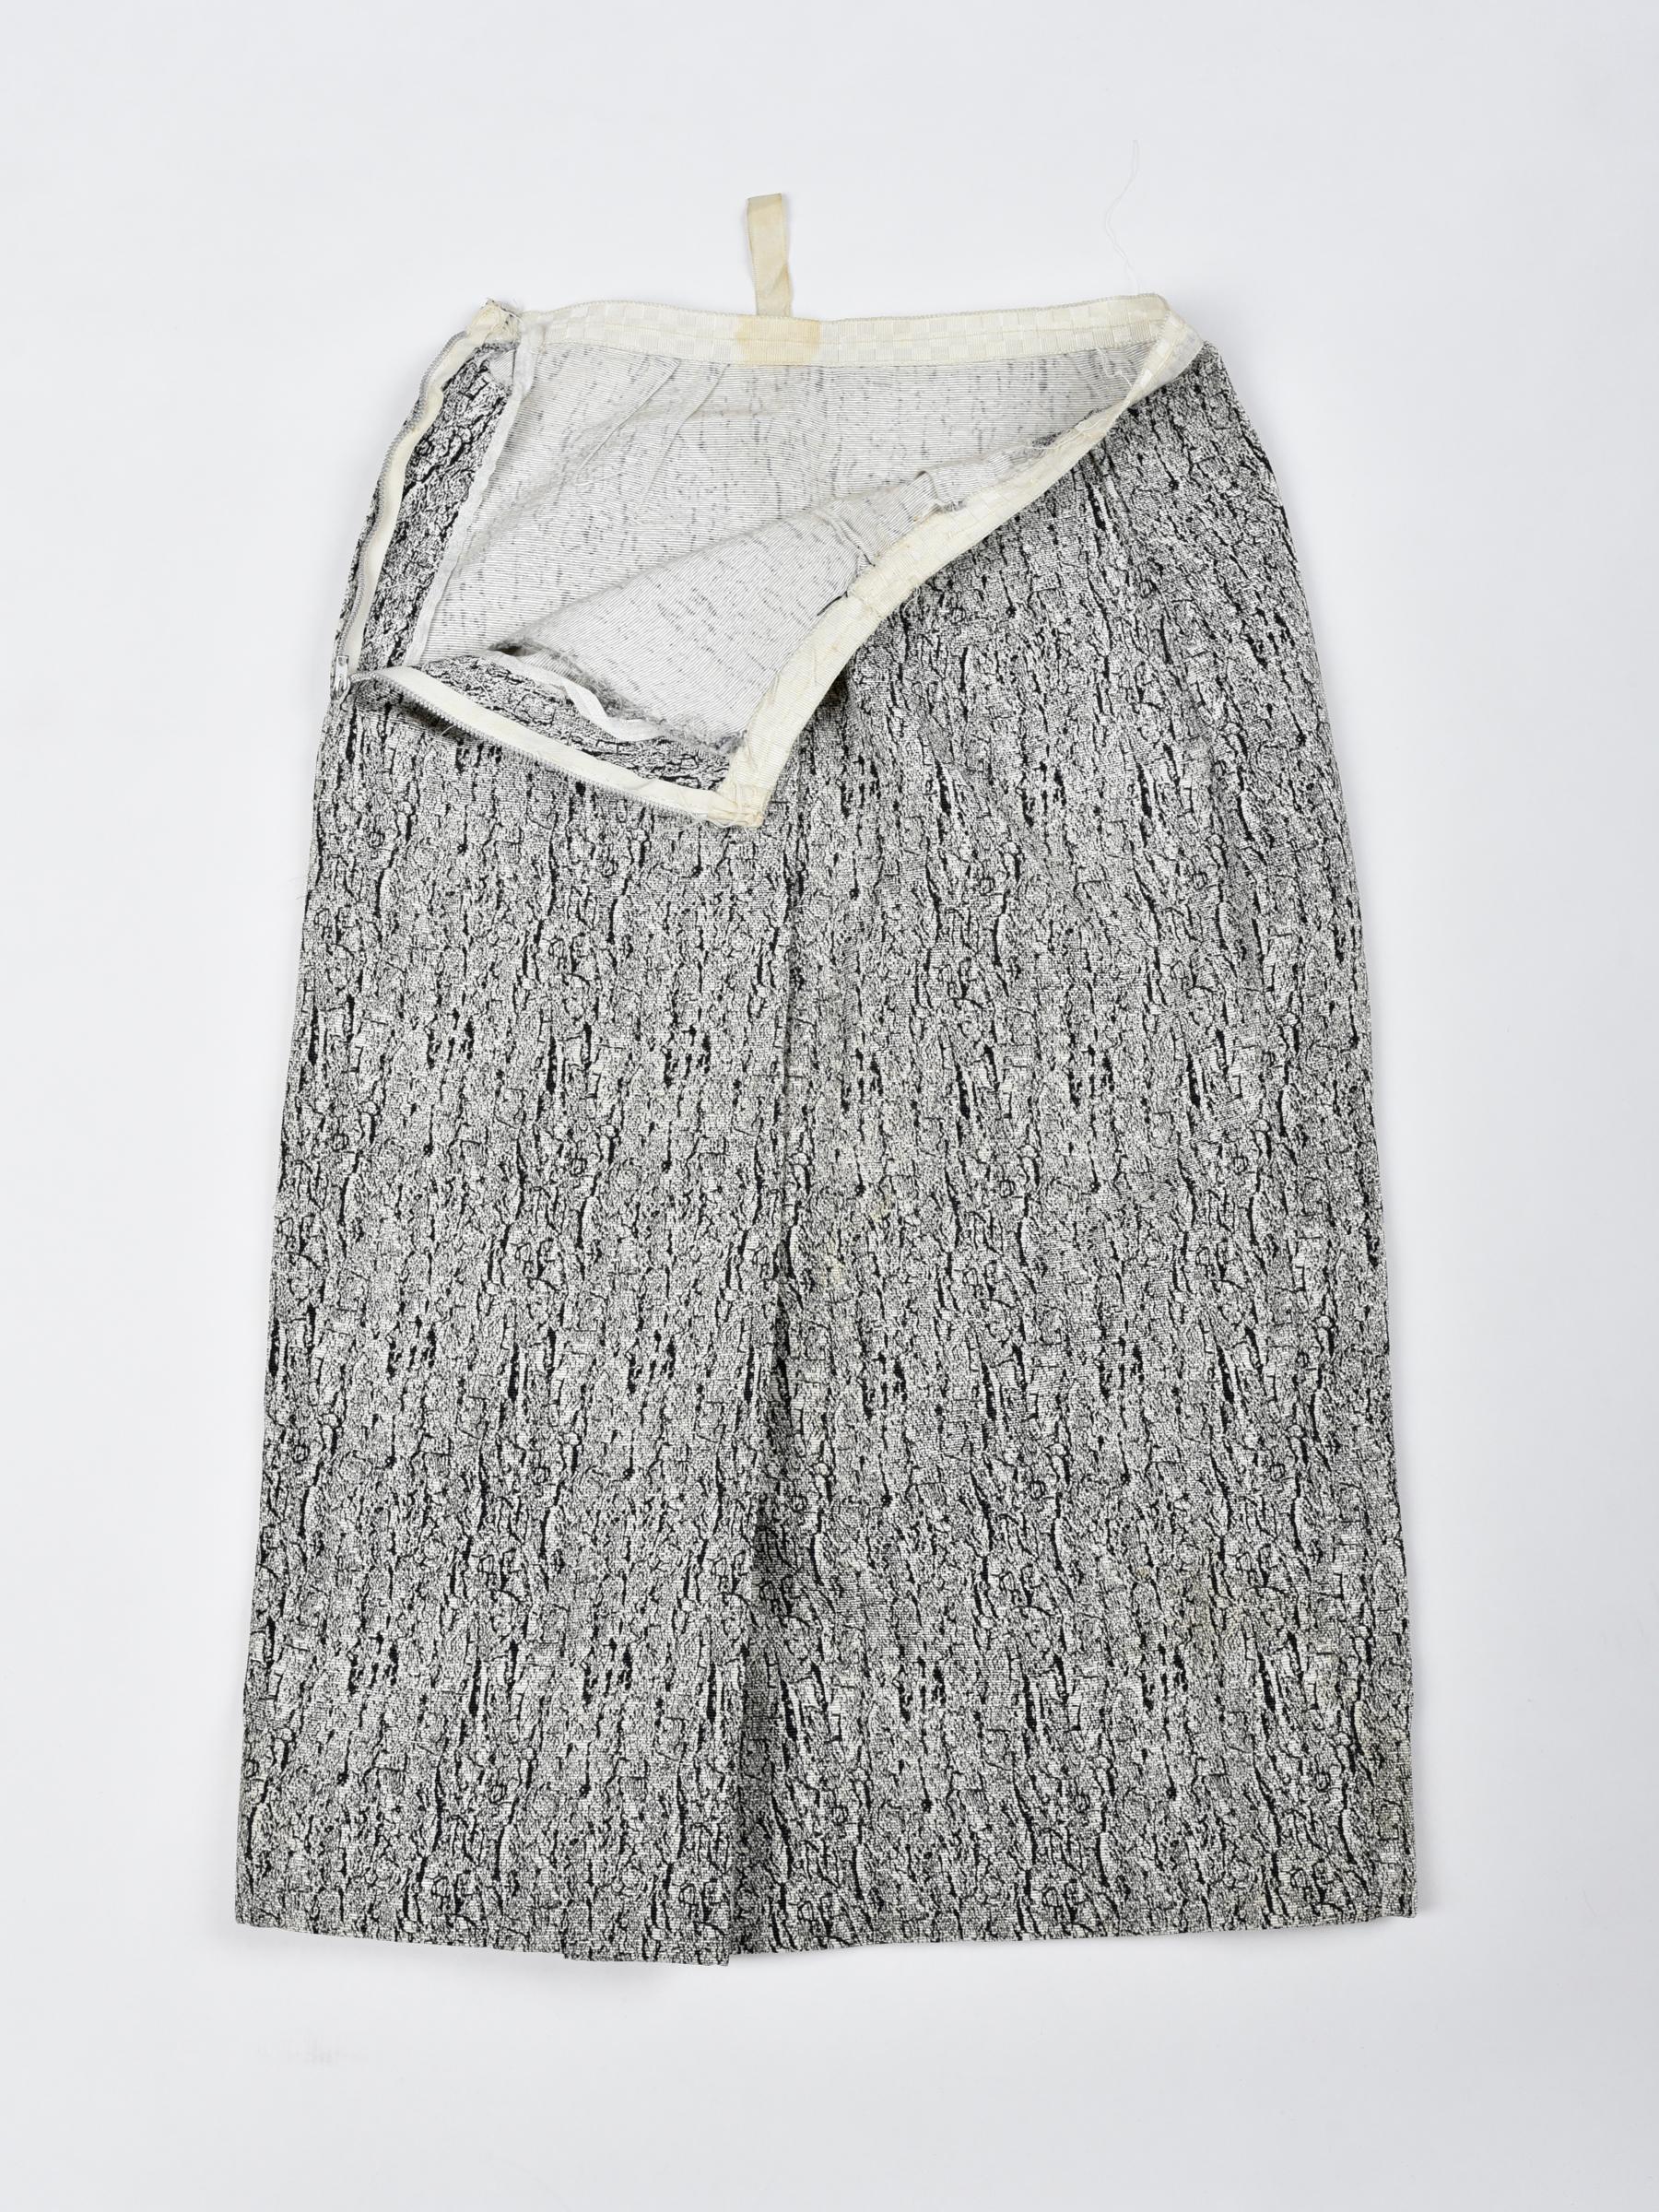 Tailleur jupe de bar haute couture en faille de soie imprimée marbrée, France, circa 1947-1950 en vente 8